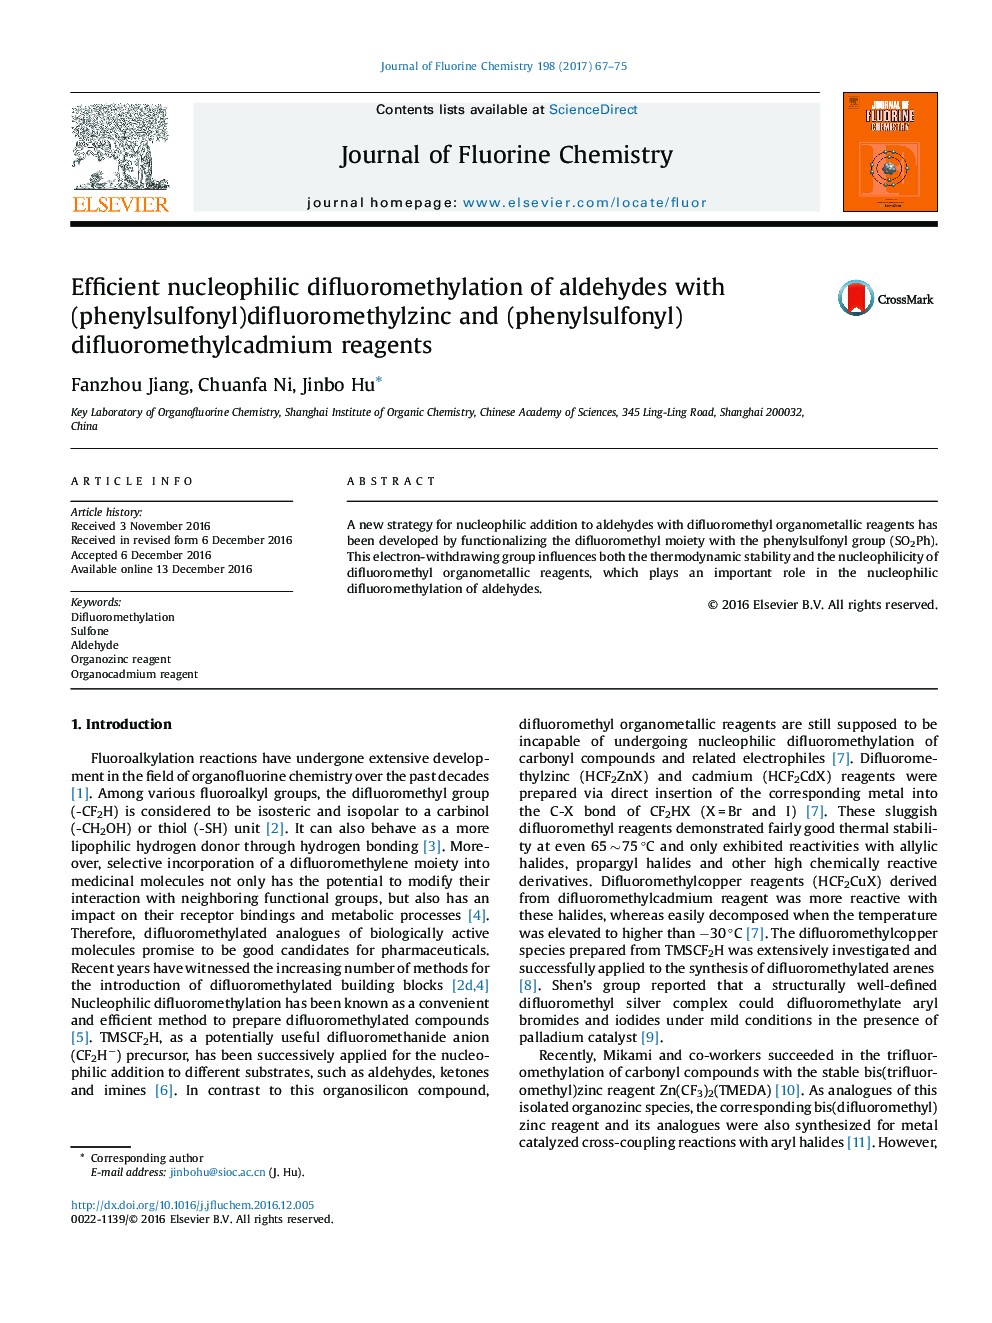 Efficient nucleophilic difluoromethylation of aldehydes with (phenylsulfonyl)difluoromethylzinc and (phenylsulfonyl)difluoromethylcadmium reagents